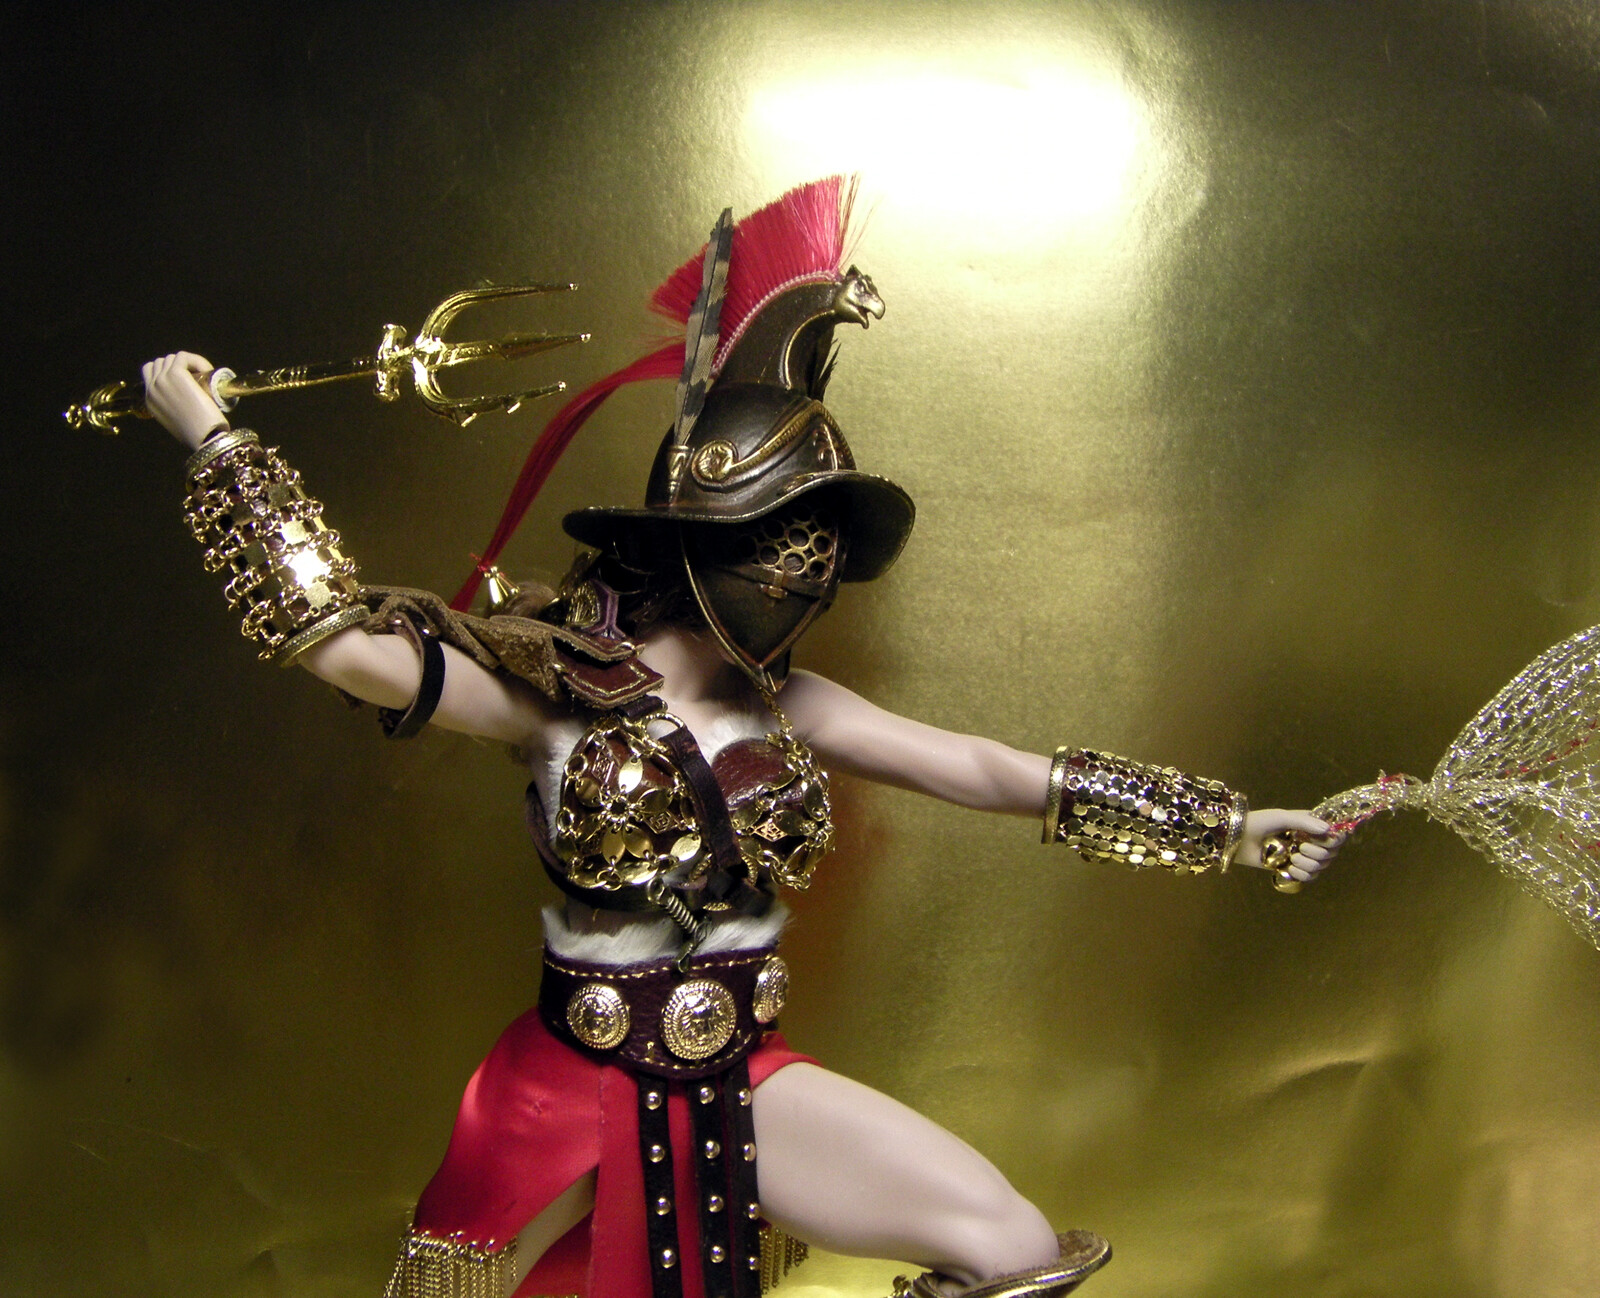 DOLL IN ARMOR - Costume №17 for Phicen doll. Gladiator girl.